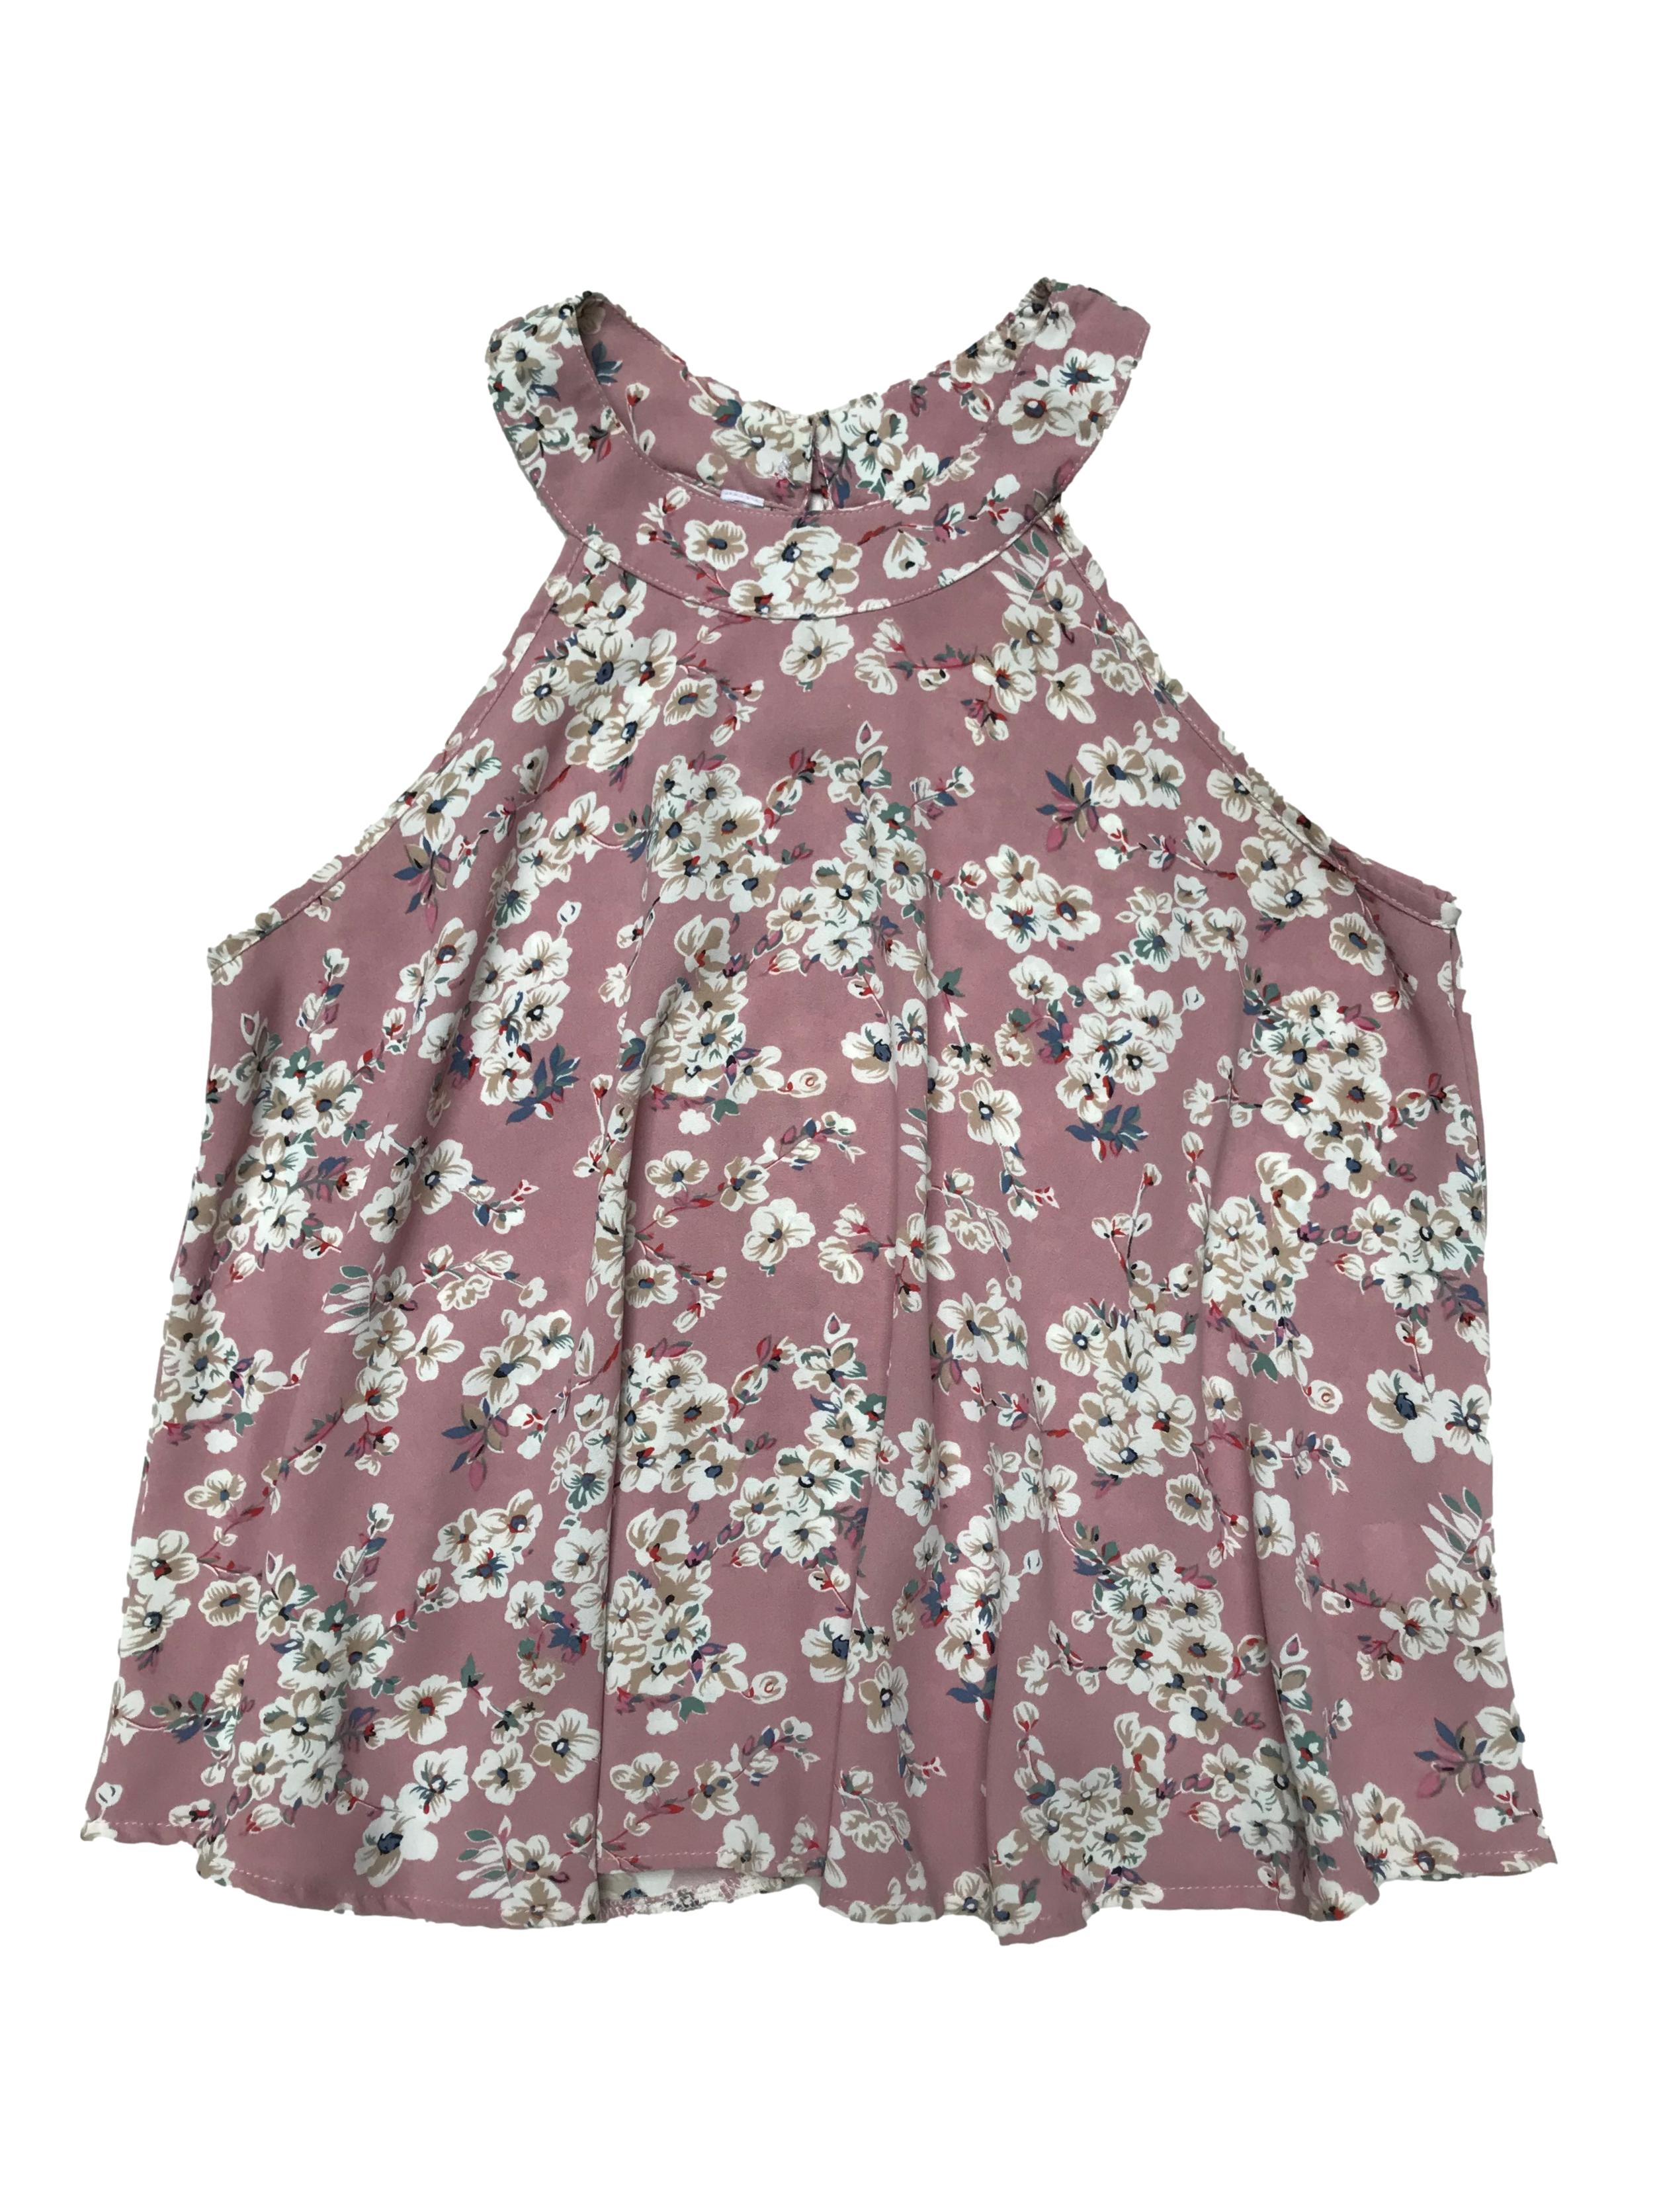 Blusa palo rosa con print de flores, tela plana fluida, tiene botón posterior en el cuello y cuerpo suelto. Largo 50cm